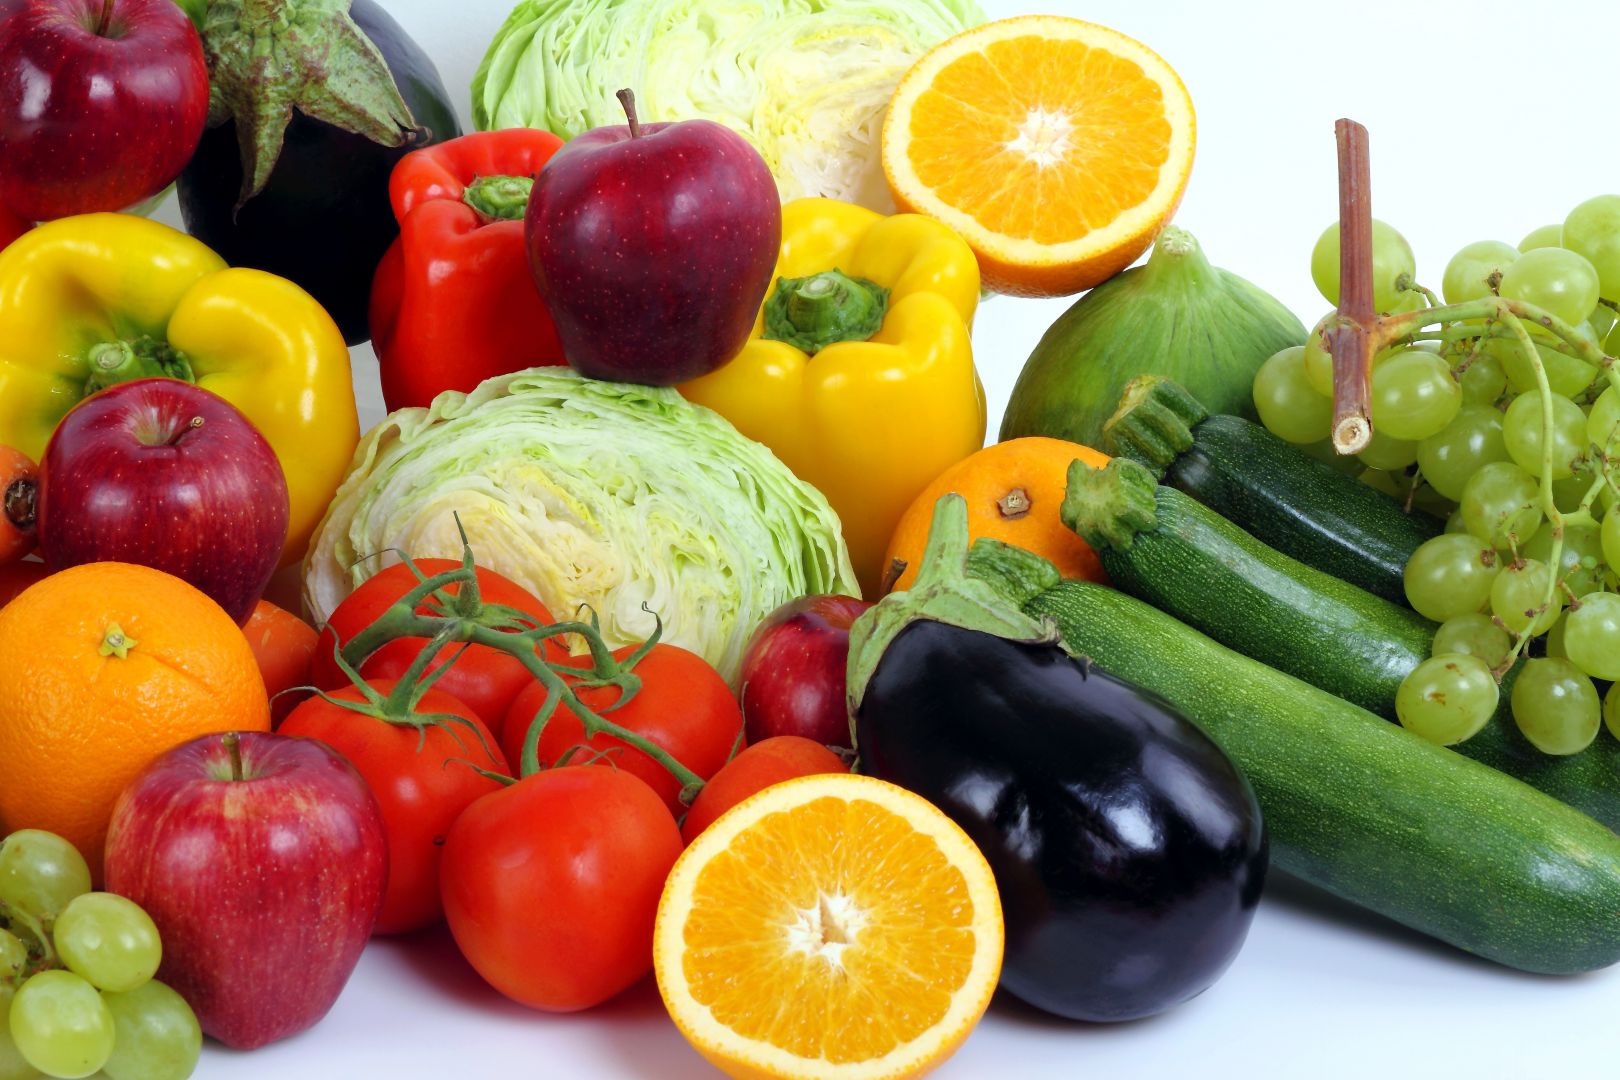 Zakázka na dodávka ovoce (Ovoce a zelenina) - Vyškov